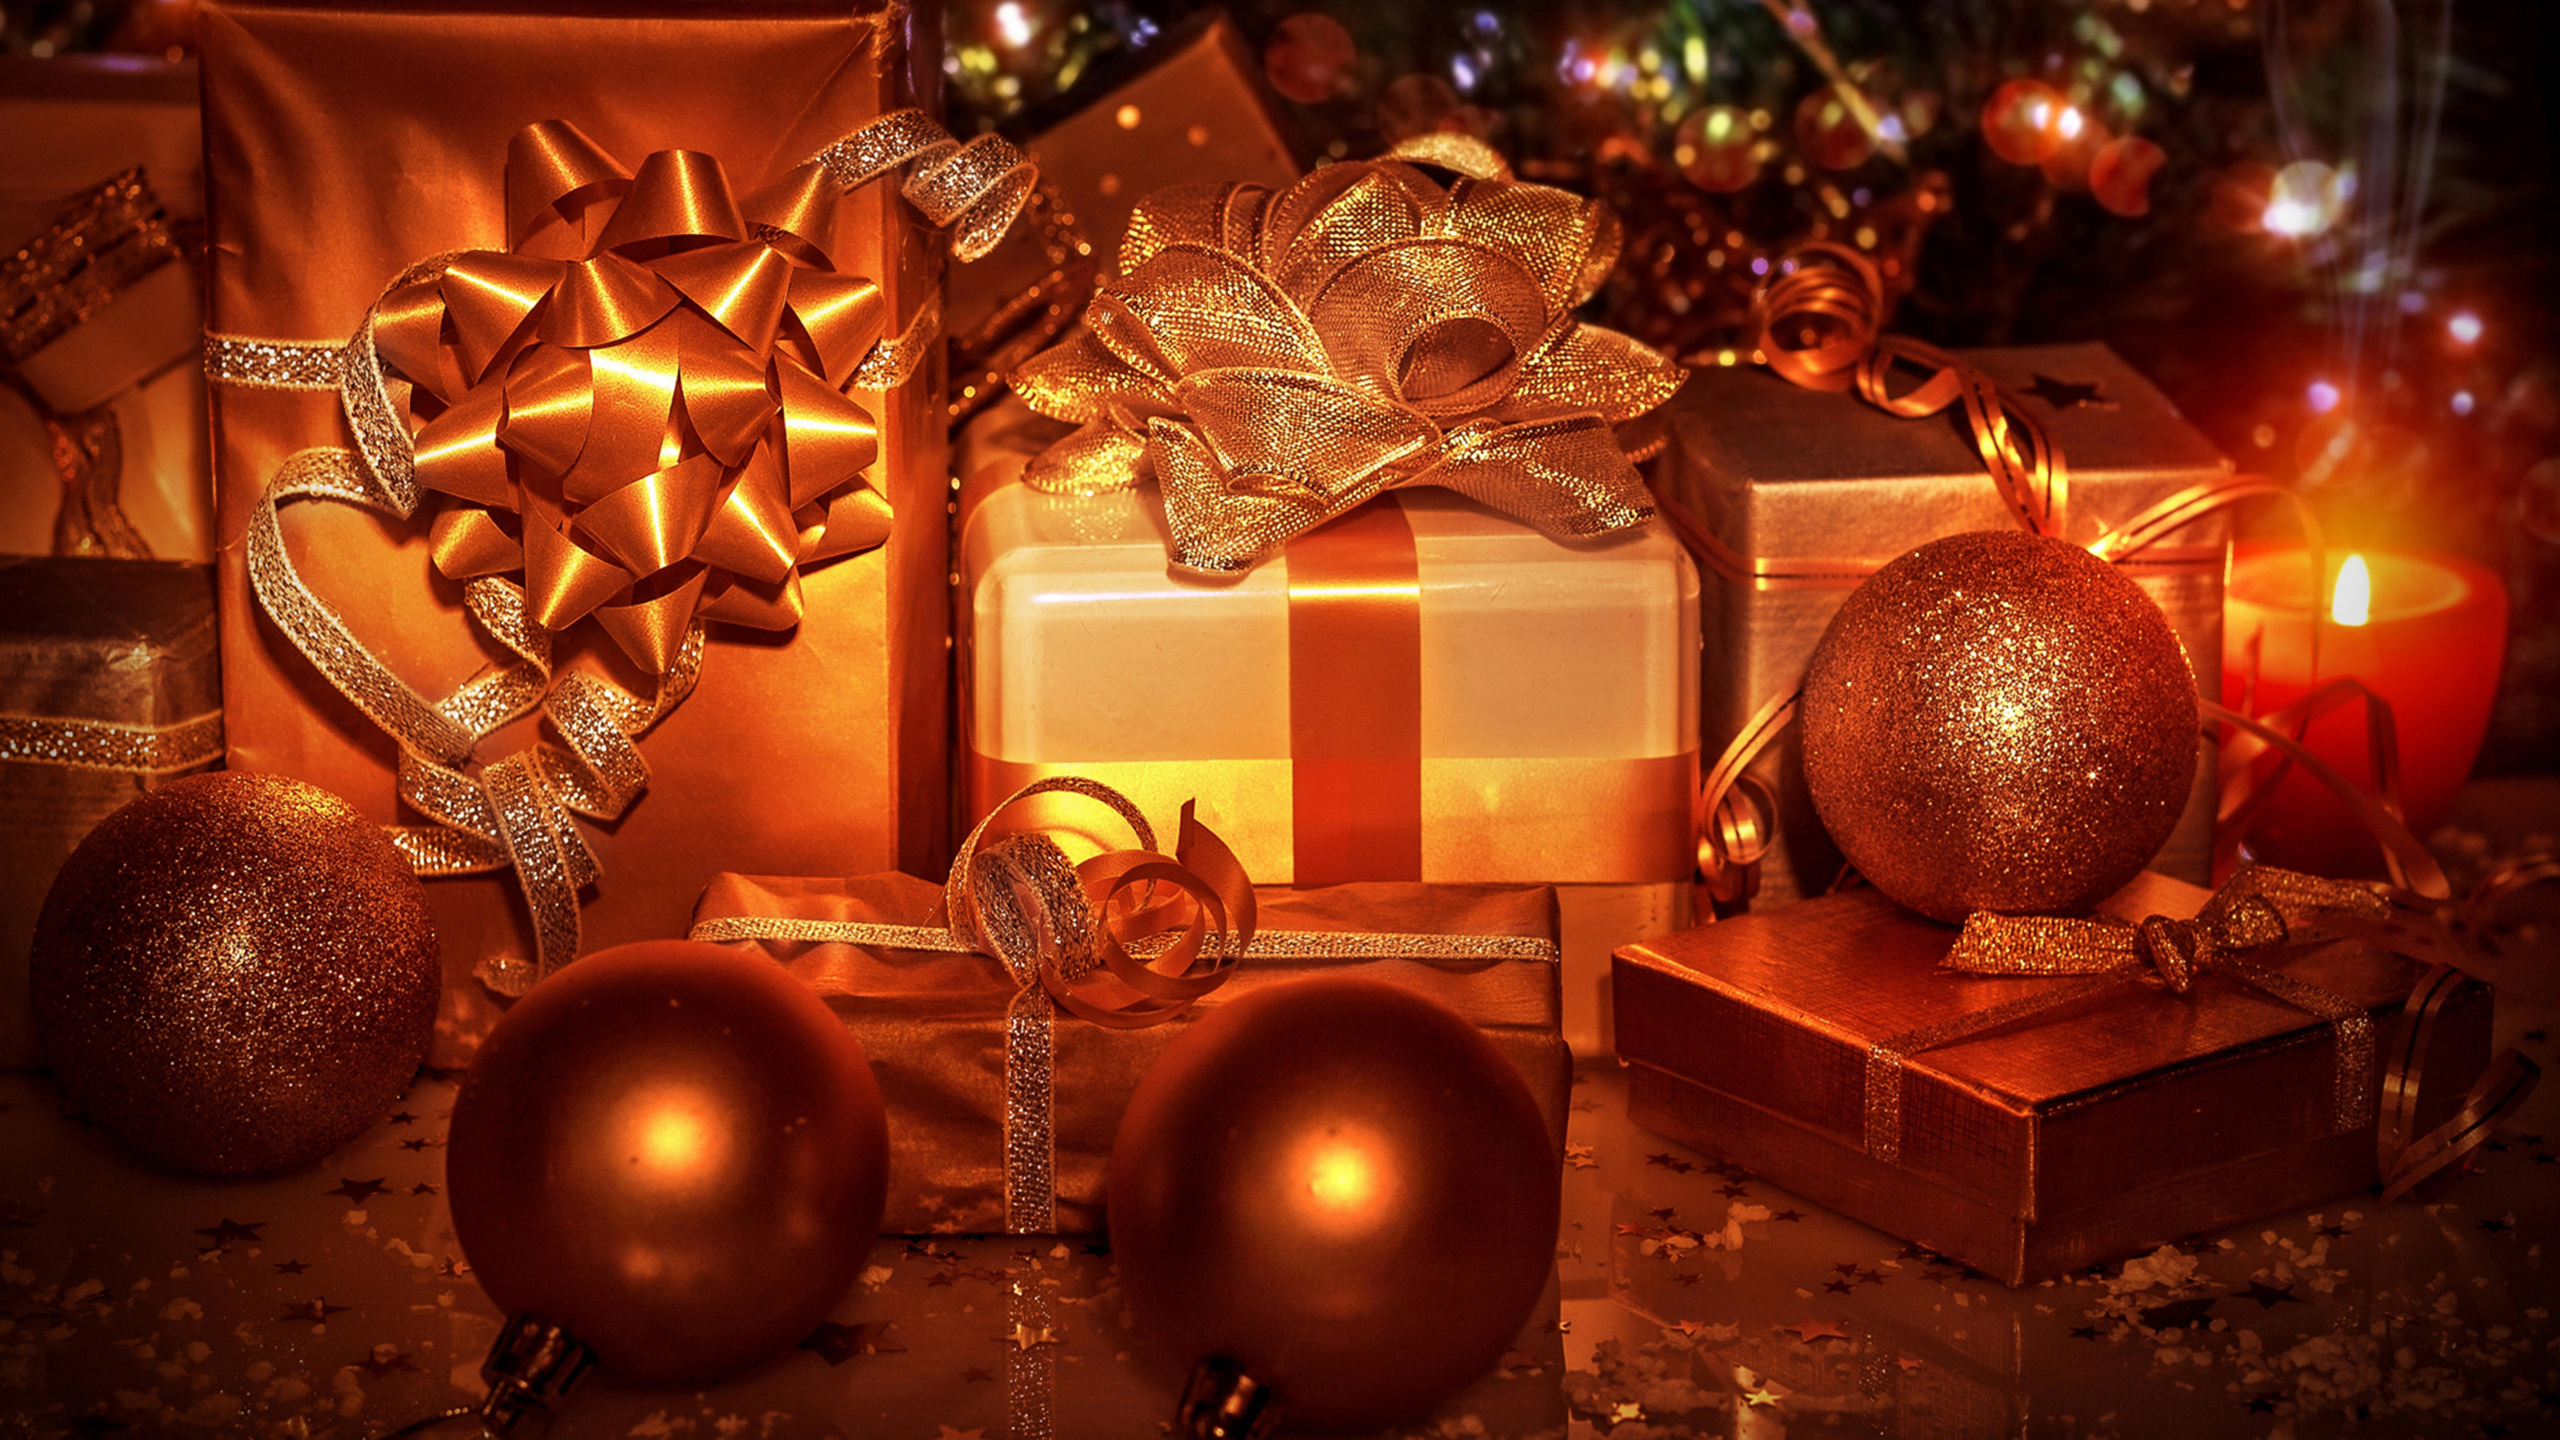 Le Jour De Noël, Ornement de Noël, Arbre de Noël, Cadeau de Noël, Décoration de Noël. Wallpaper in 2560x1440 Resolution